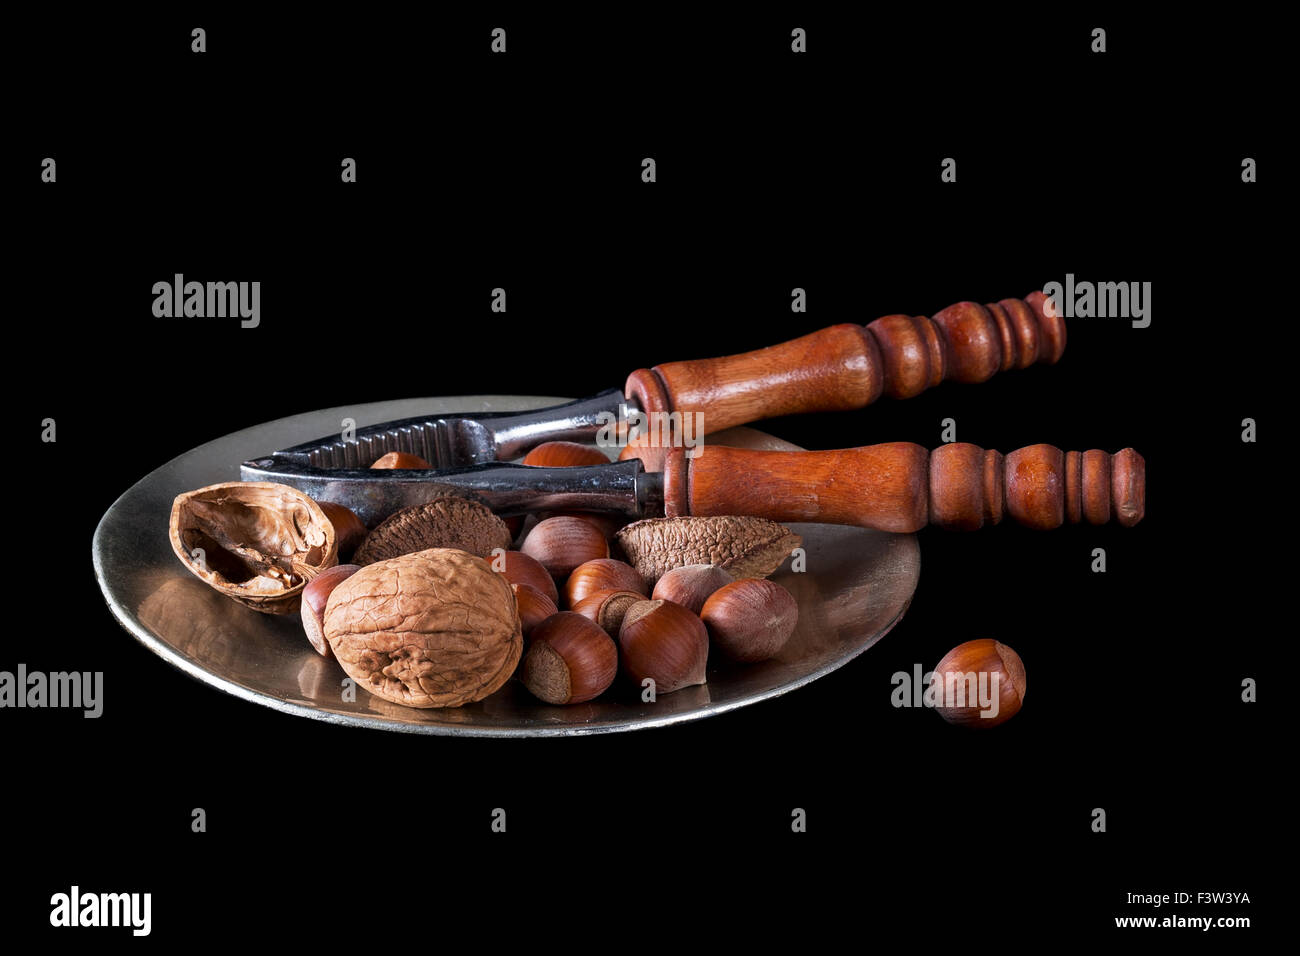 Un assortiment de noix et casse-noix sur noir Banque D'Images